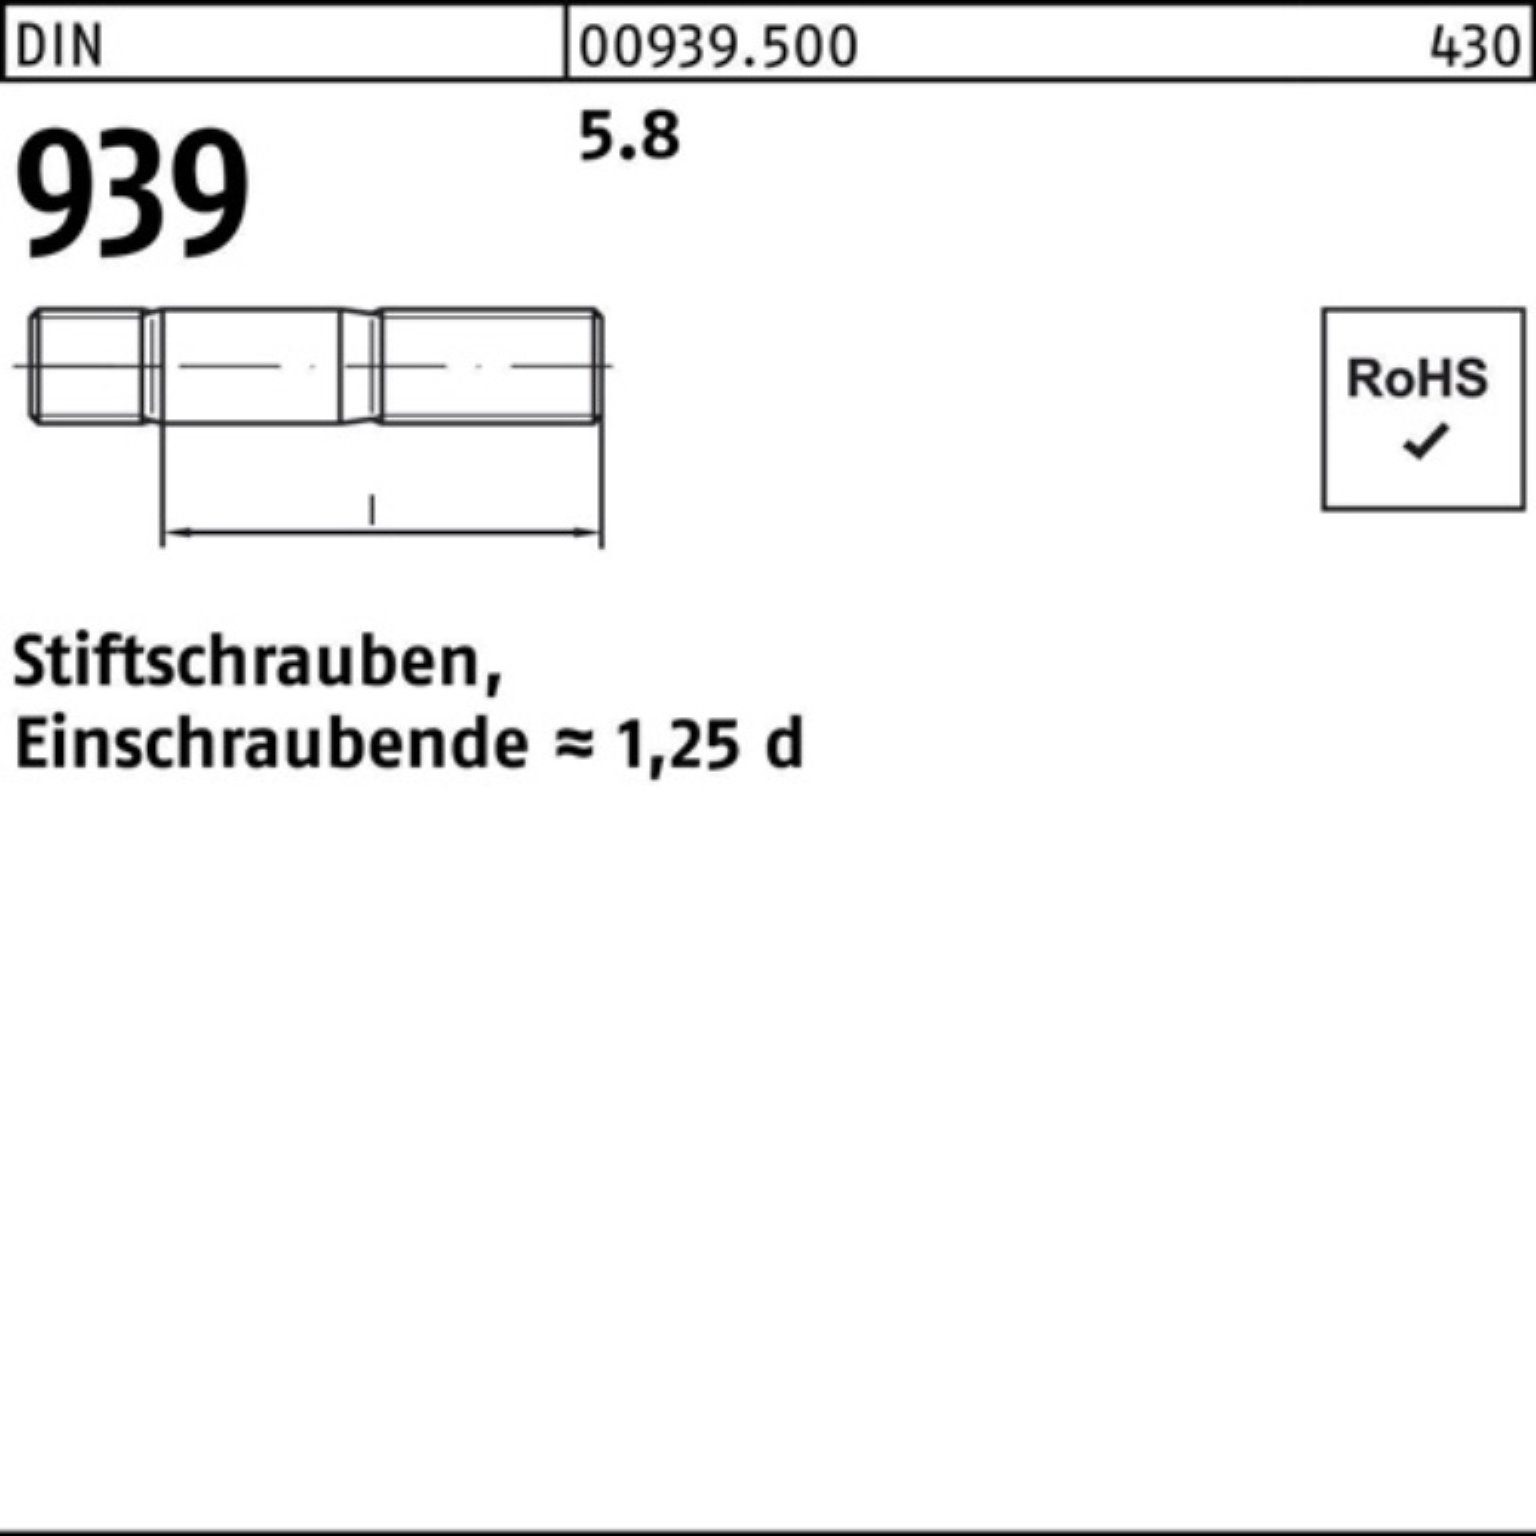 5.8 Stiftschraube DIN 100er S 939 Reyher Pack M30x Einschraubende=1,25d 1 Stiftschraube 150